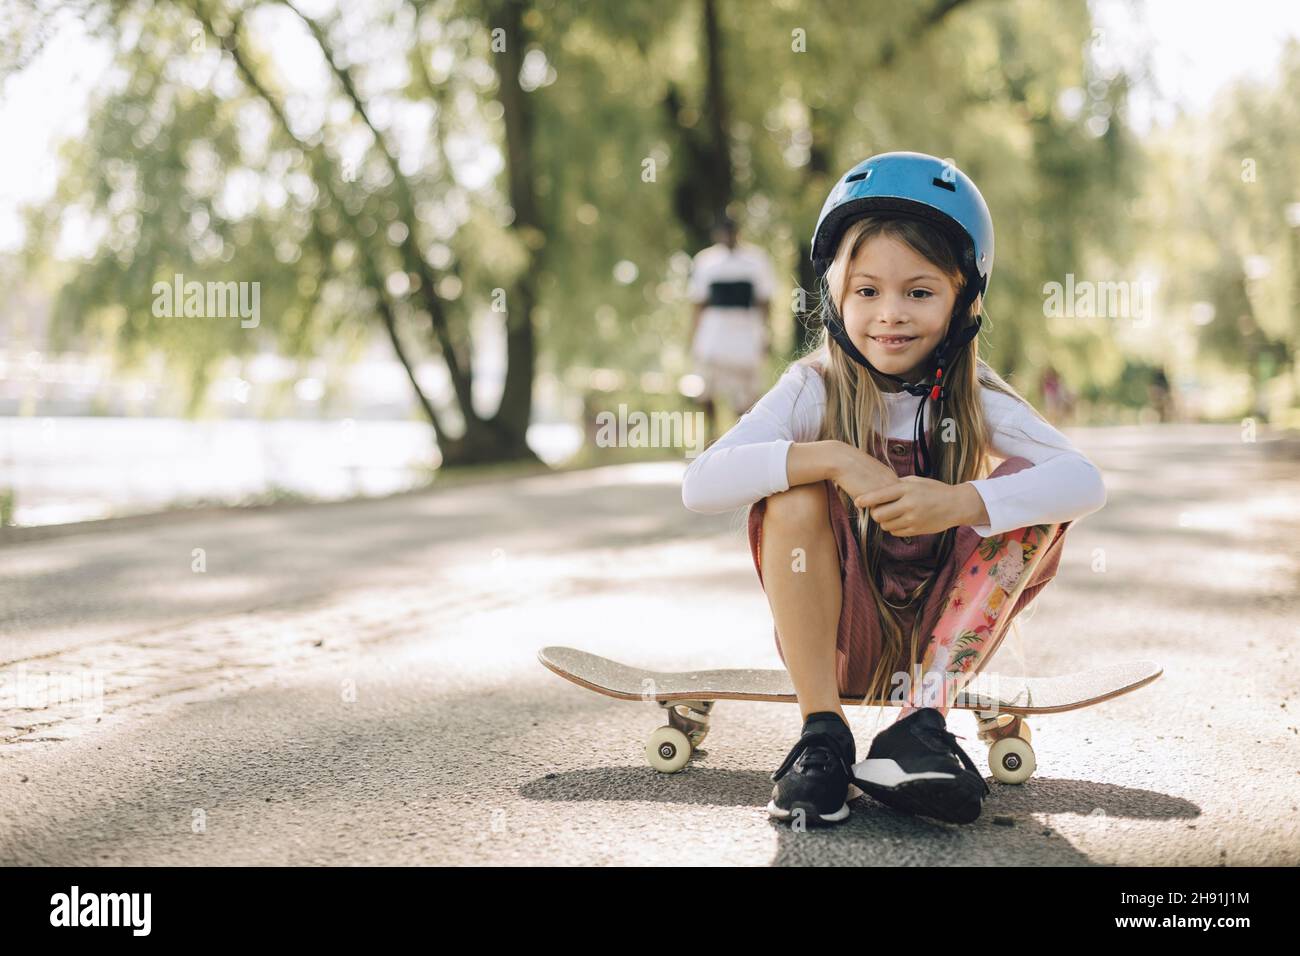 Mädchen mit Beinprothese schaut nach unten, während sie auf dem Skateboard im Park sitzt Stockfoto